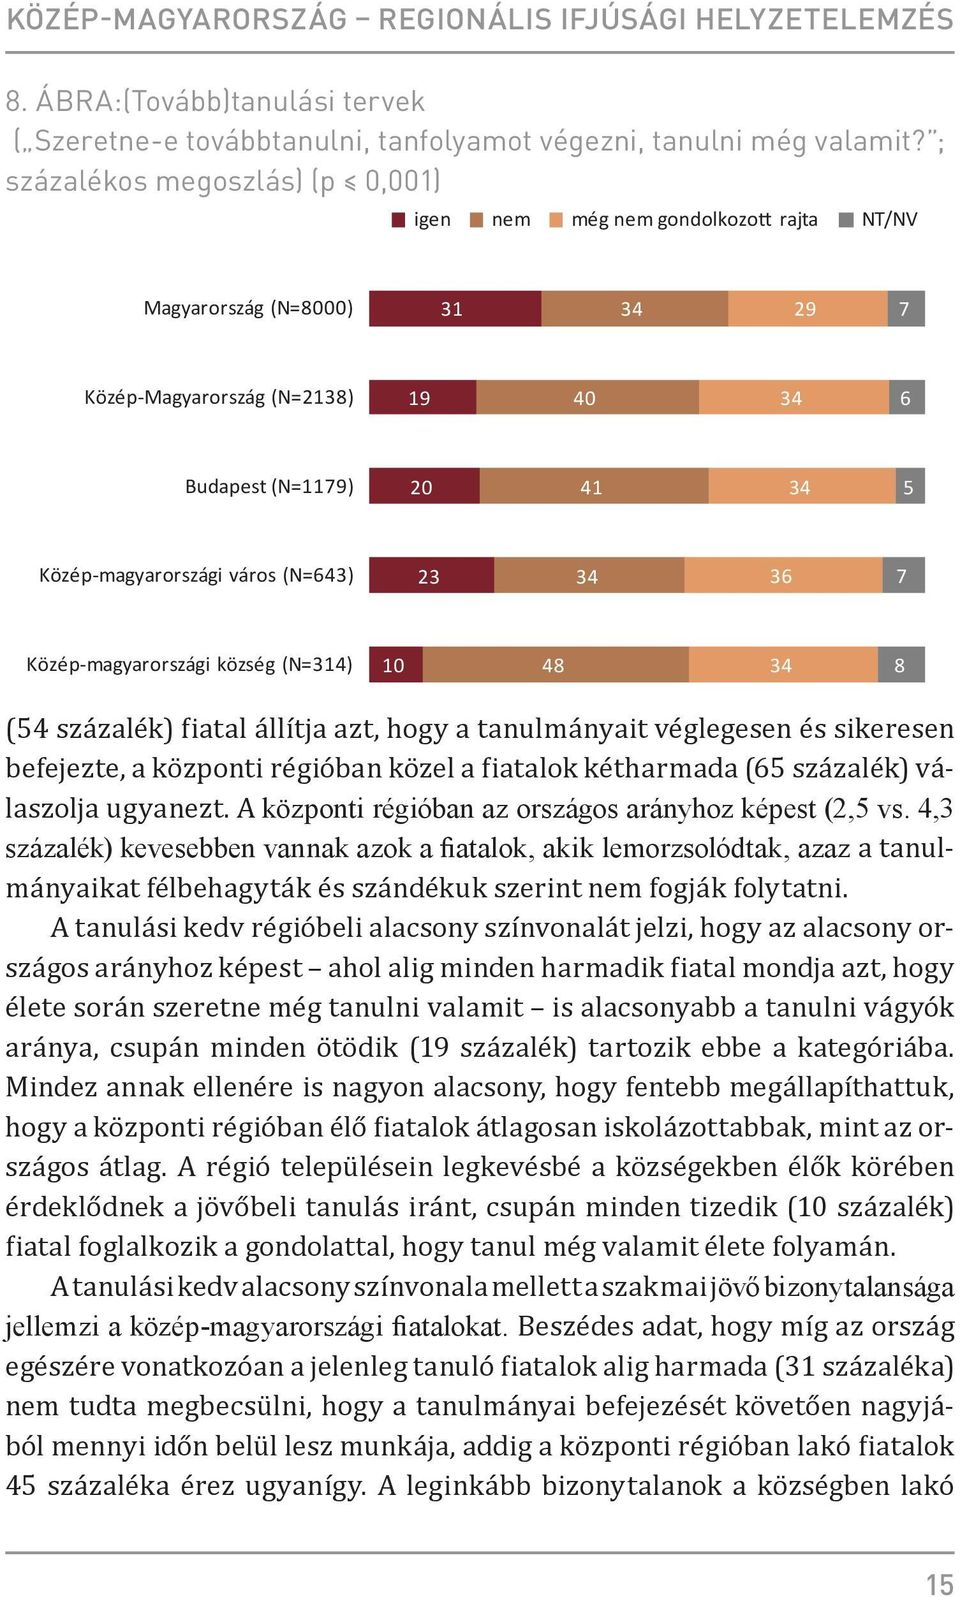 város (N=643) 23 34 36 7 Közép-magyarországi község (N=314) 10 48 34 8 (54 százalék) fiatal állítja azt, hogy a tanulmányait véglegesen és sikeresen befejezte, a központi régióban közel a fiatalok